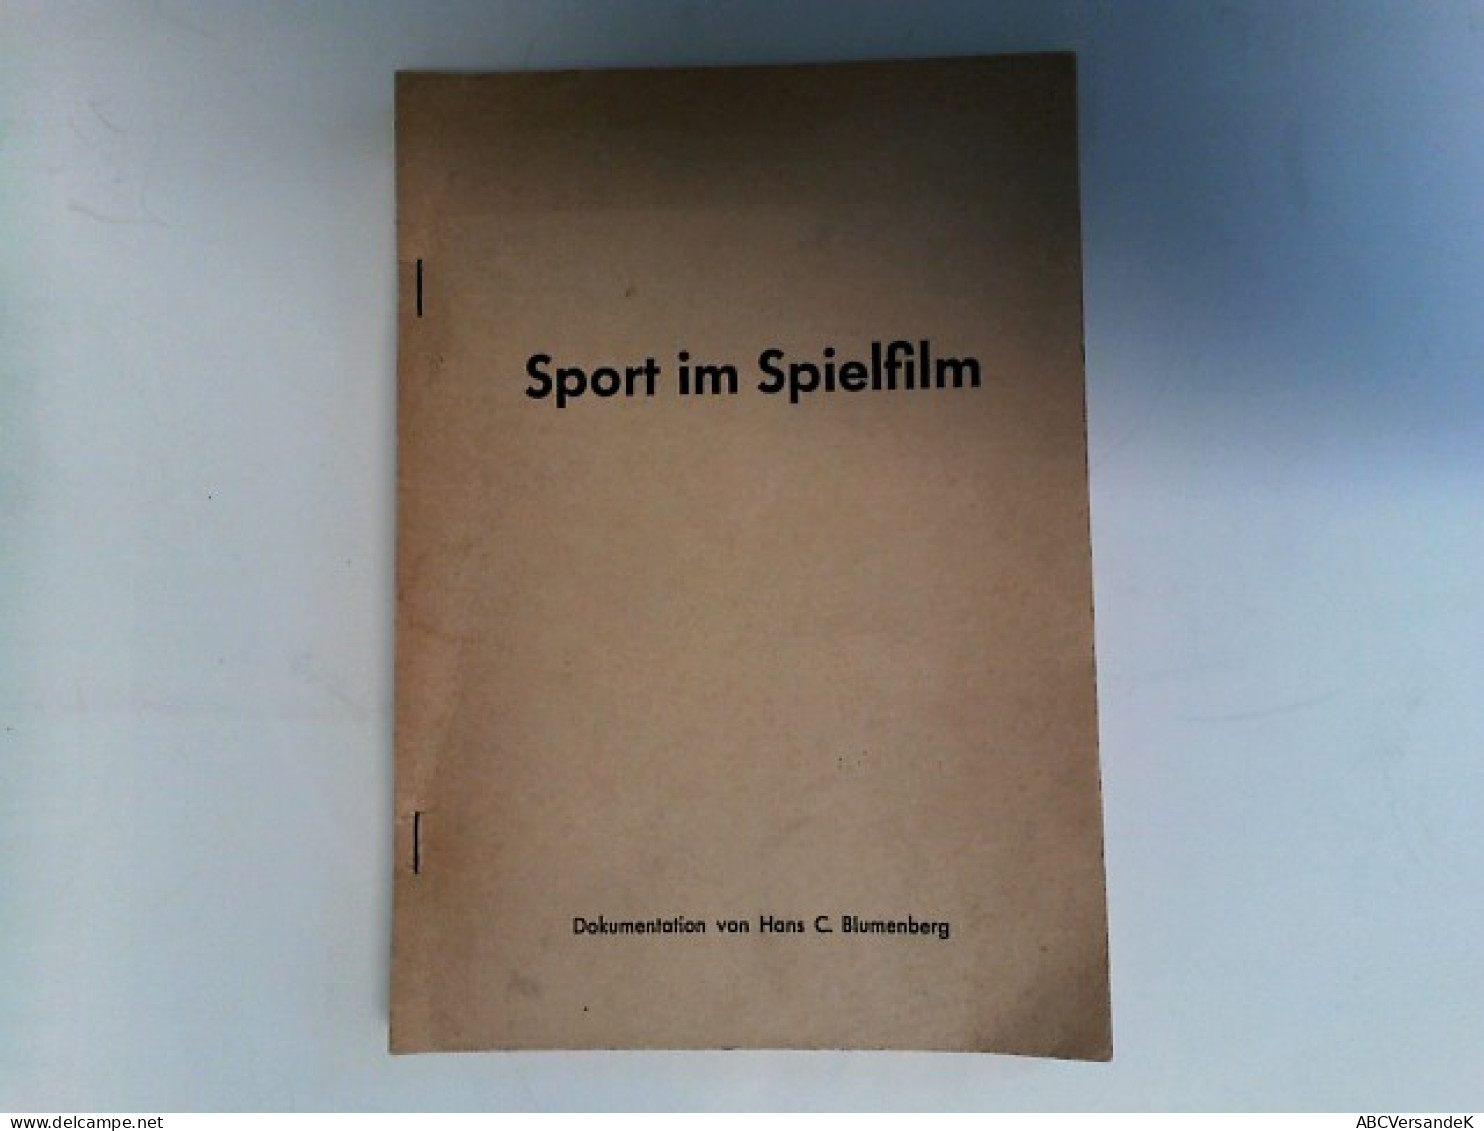 Der Sport Im Spielfilm. Eine Dokumentation. - Sport